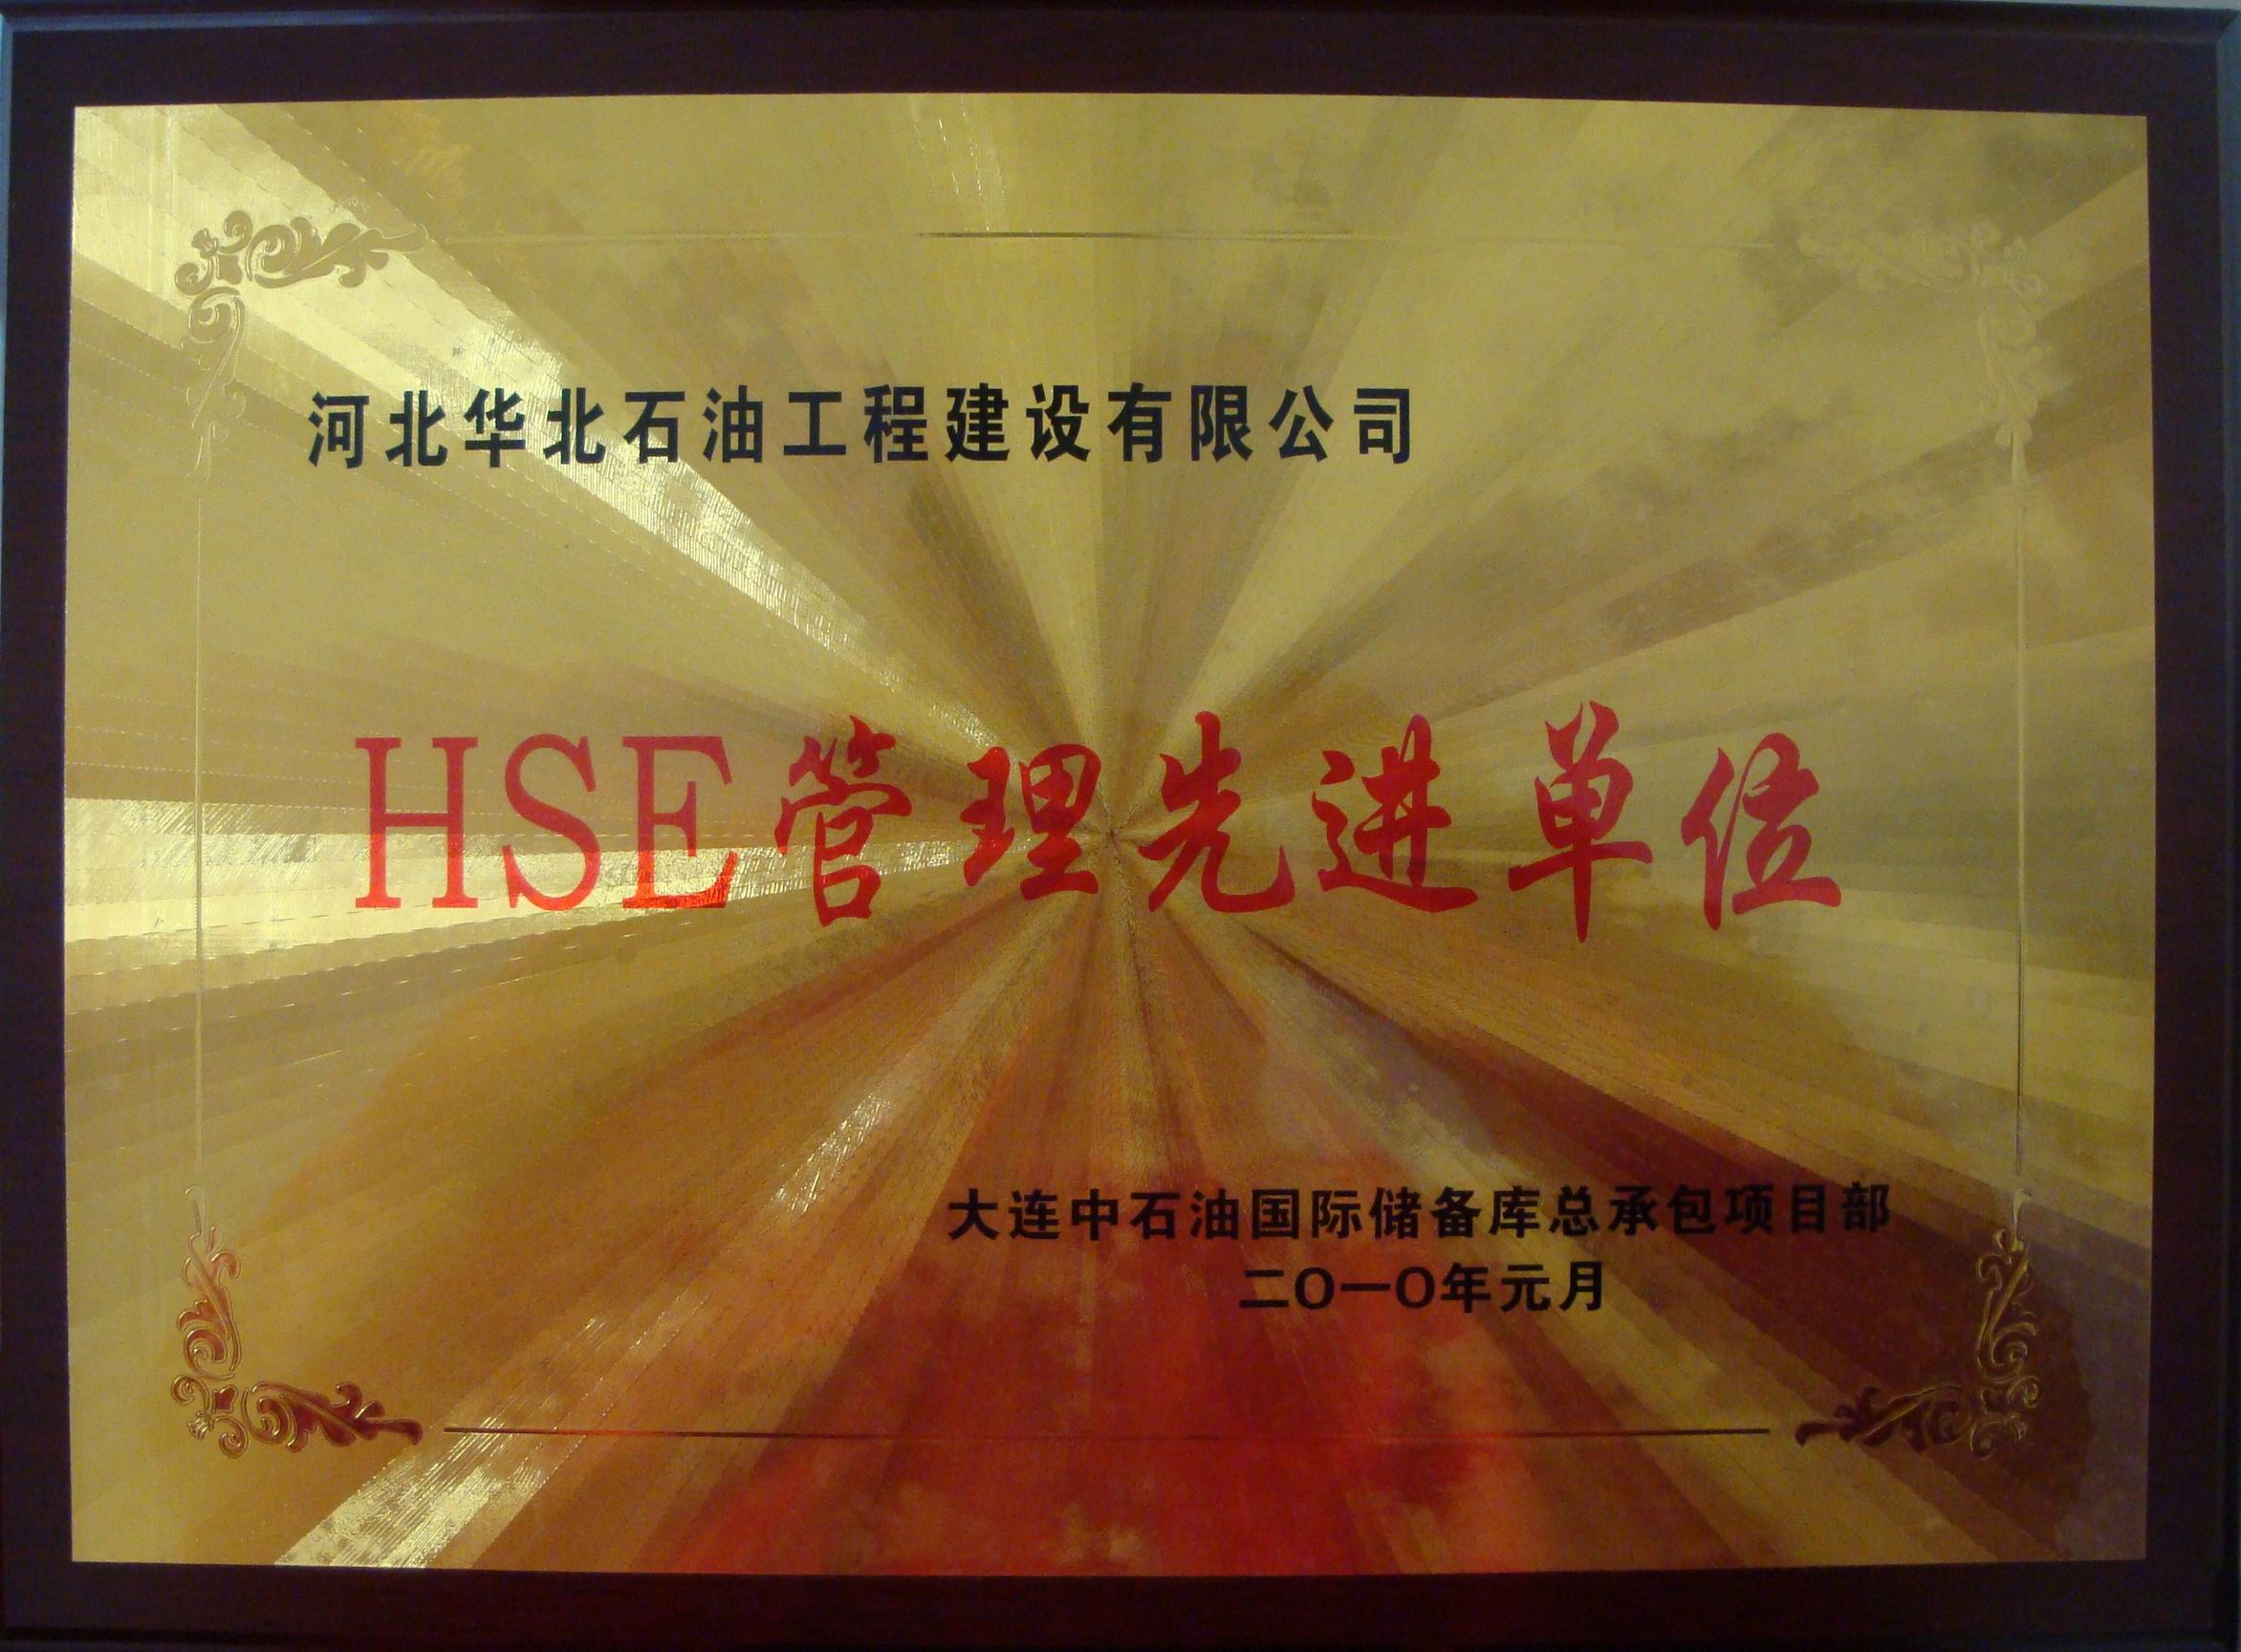 大連儲罐項目獲2009年度HSE先進單位稱號